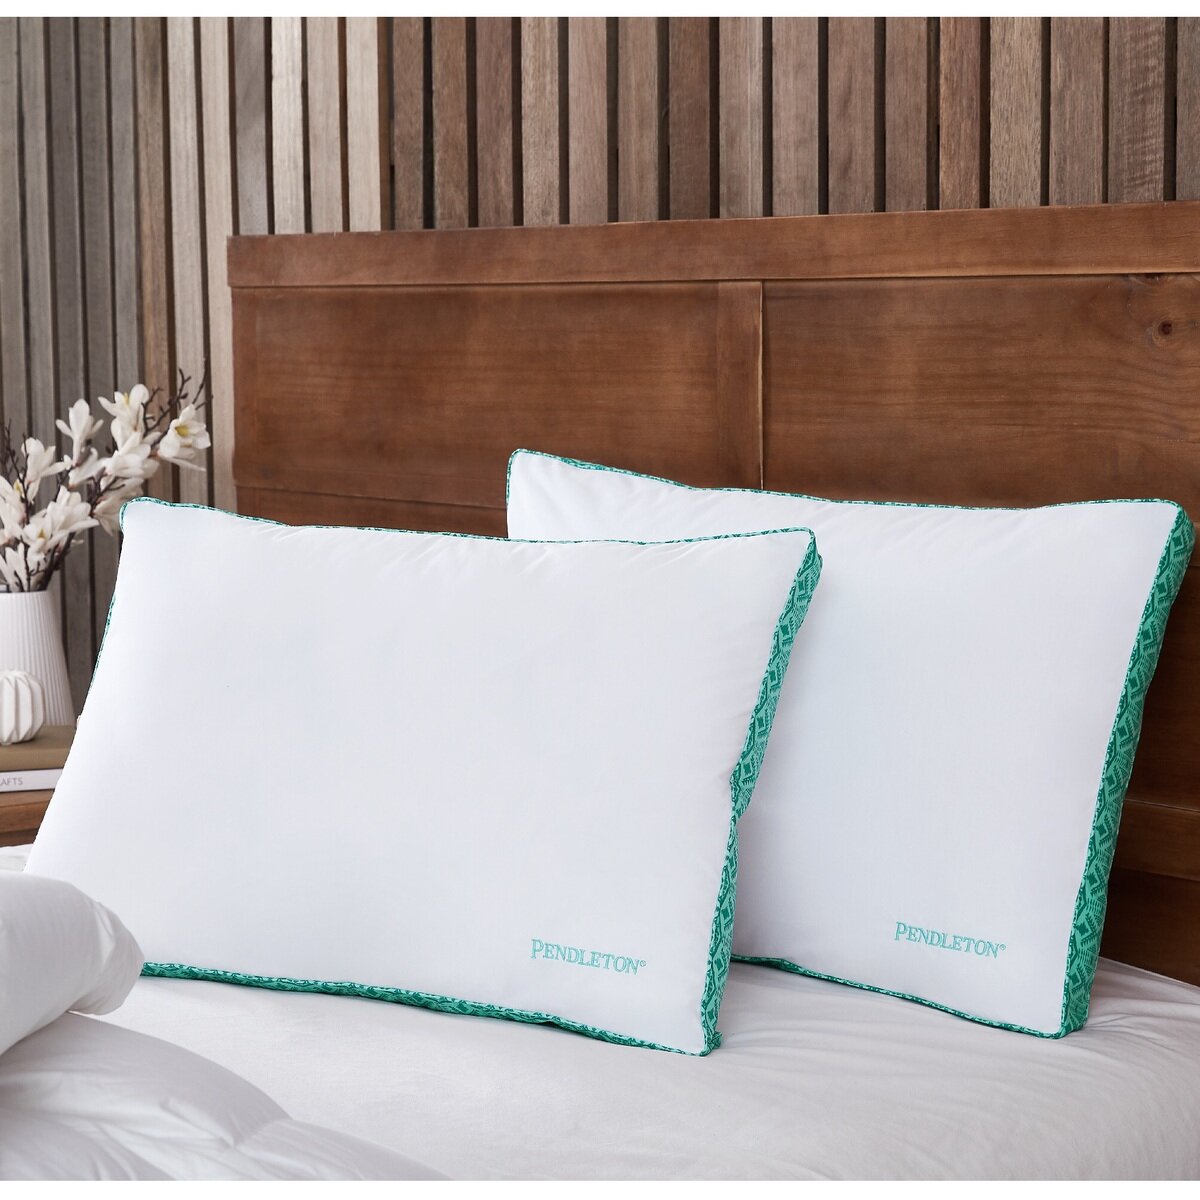 ペンドルトン マチ付き枕 2個 セット | Costco Japan